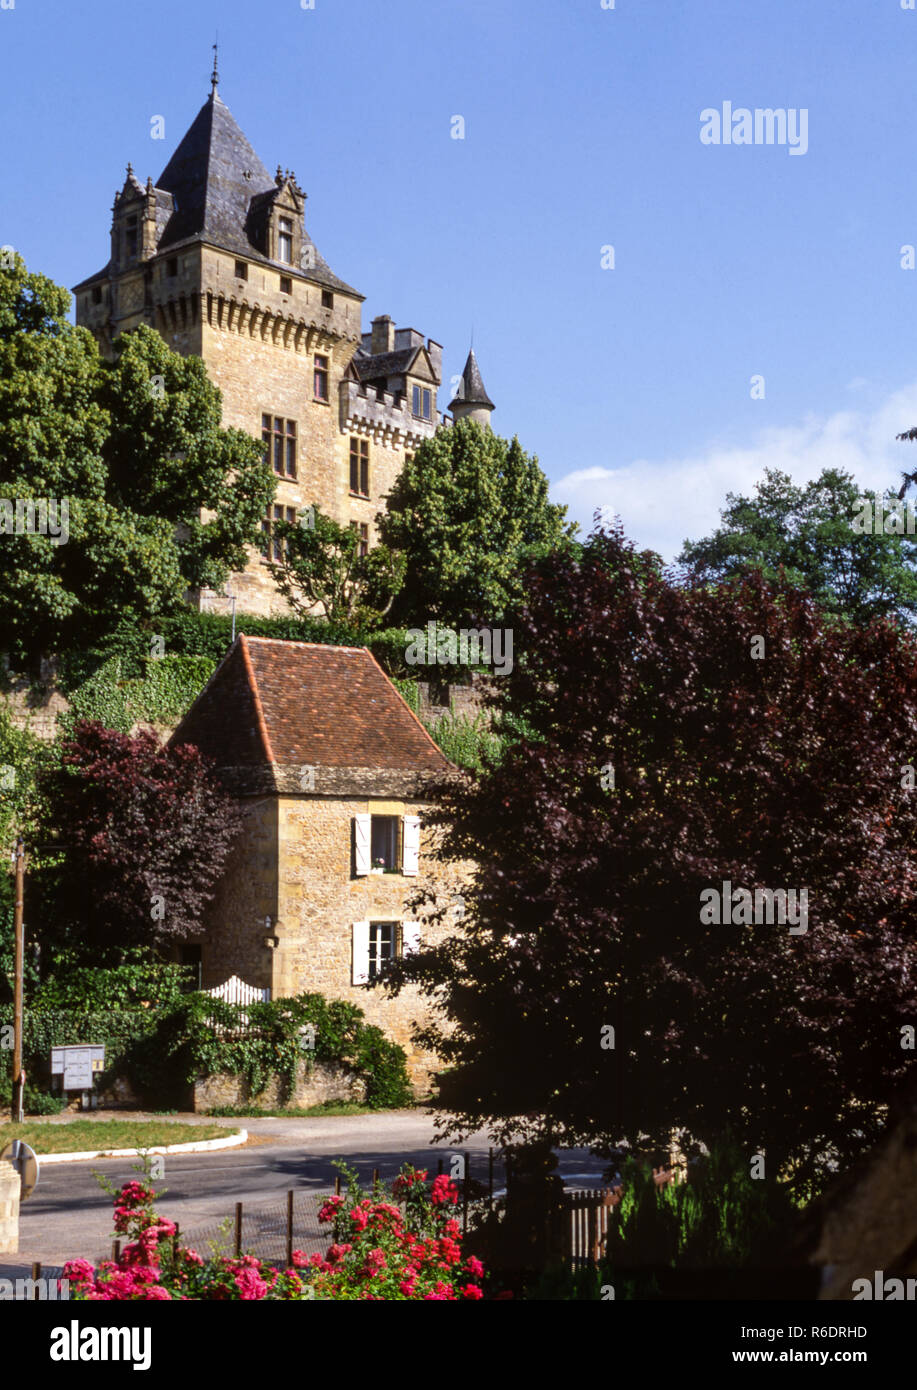 France Dept Dordogne. Chateau de Montfort Stock Photo